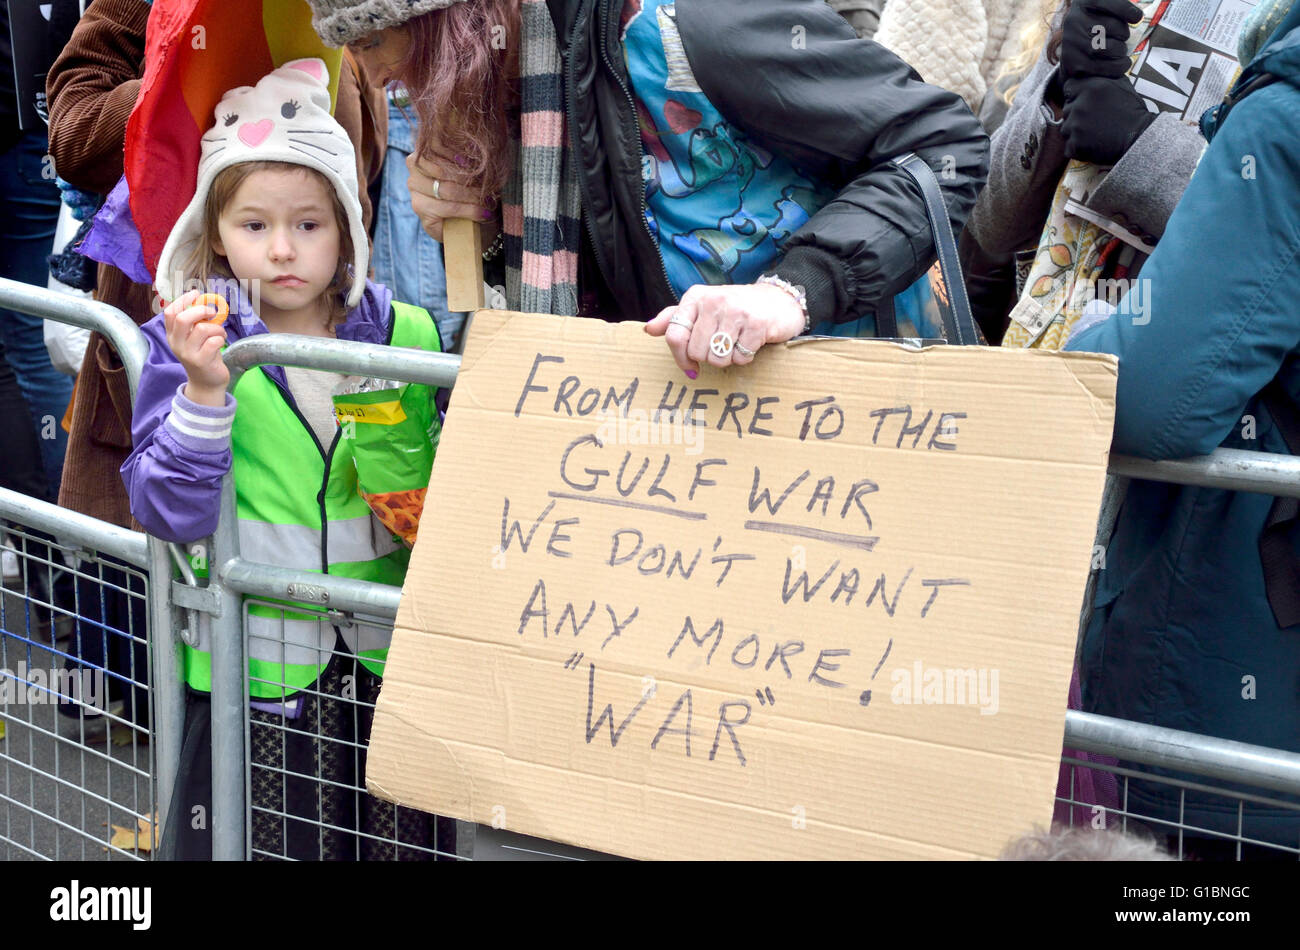 Jeune fille et sa mère à la bombe n'est pas la Syrie manifestation devant Downing Street, Londres, 28 Novembre 2015 Banque D'Images